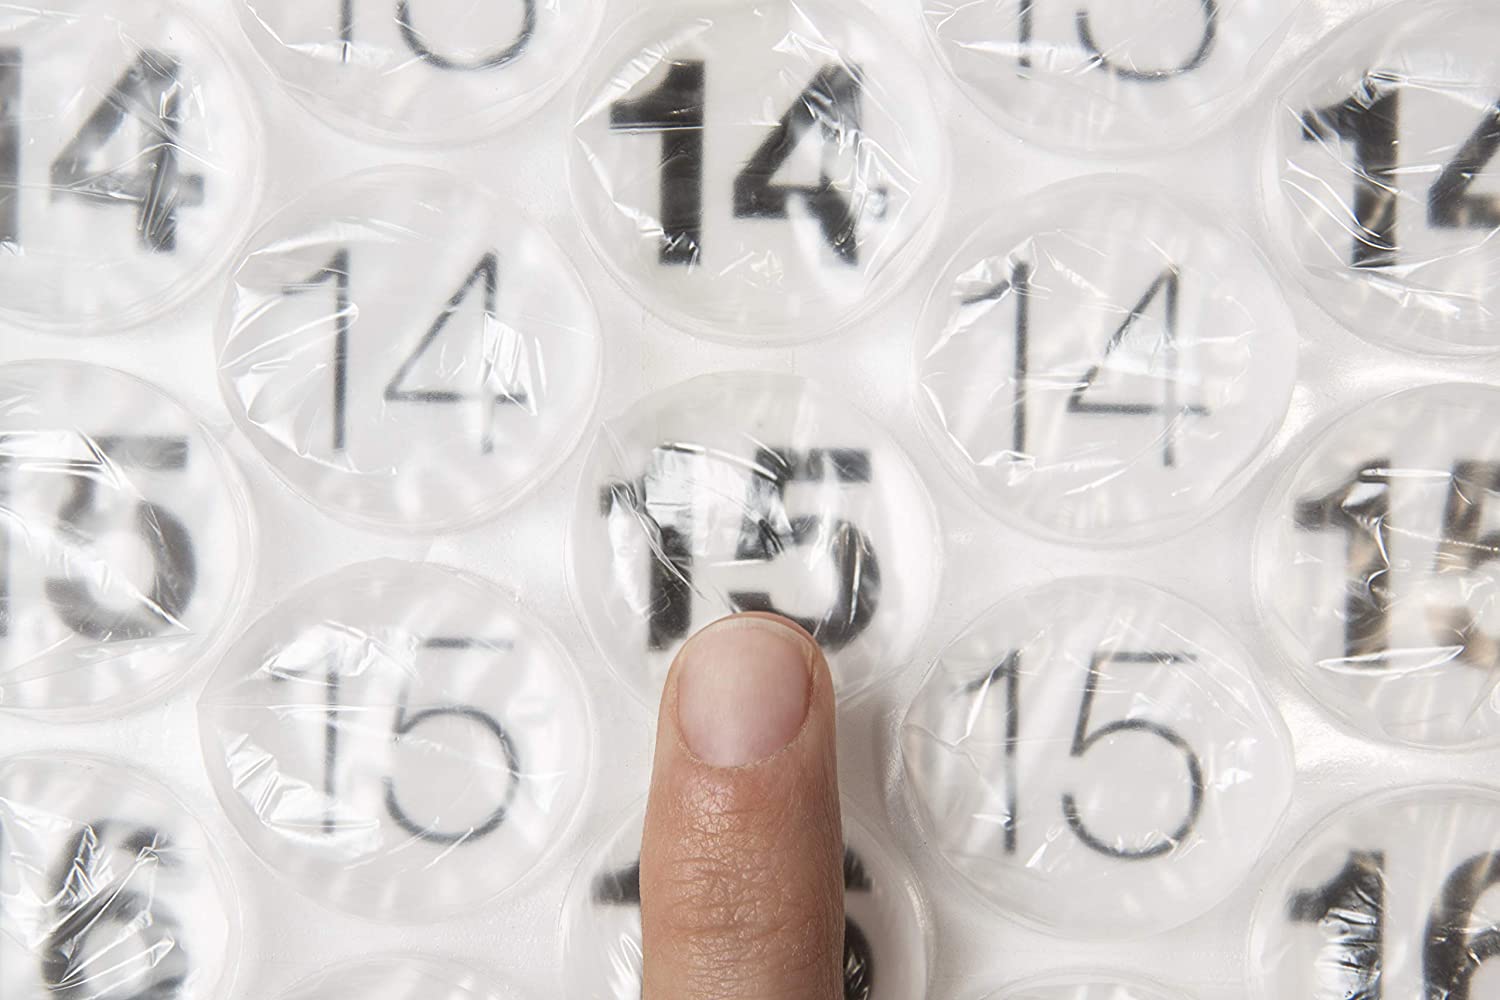 Bubble Wrap Calendar Interior Design Ideas